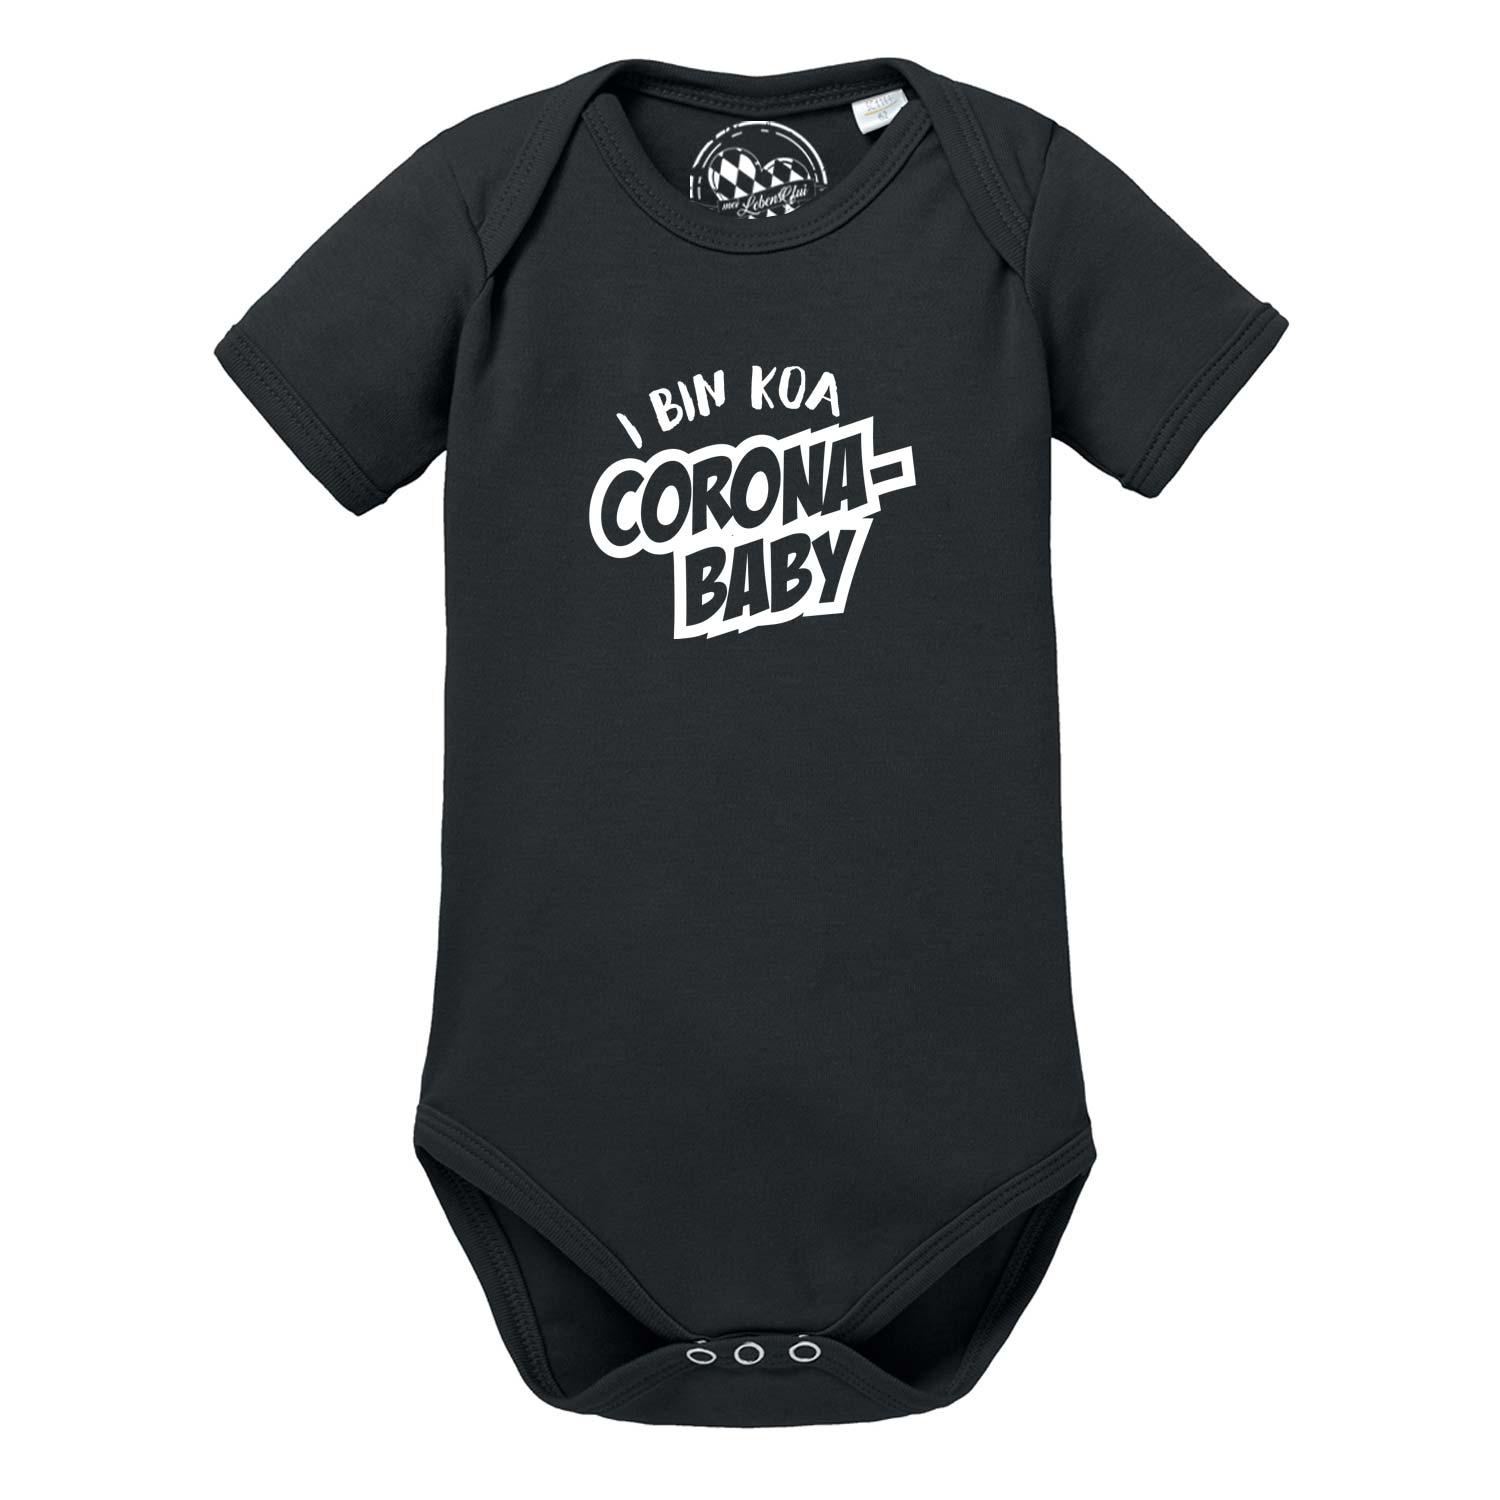 Baby Body "koa Coronababy" - bavariashop - mei LebensGfui